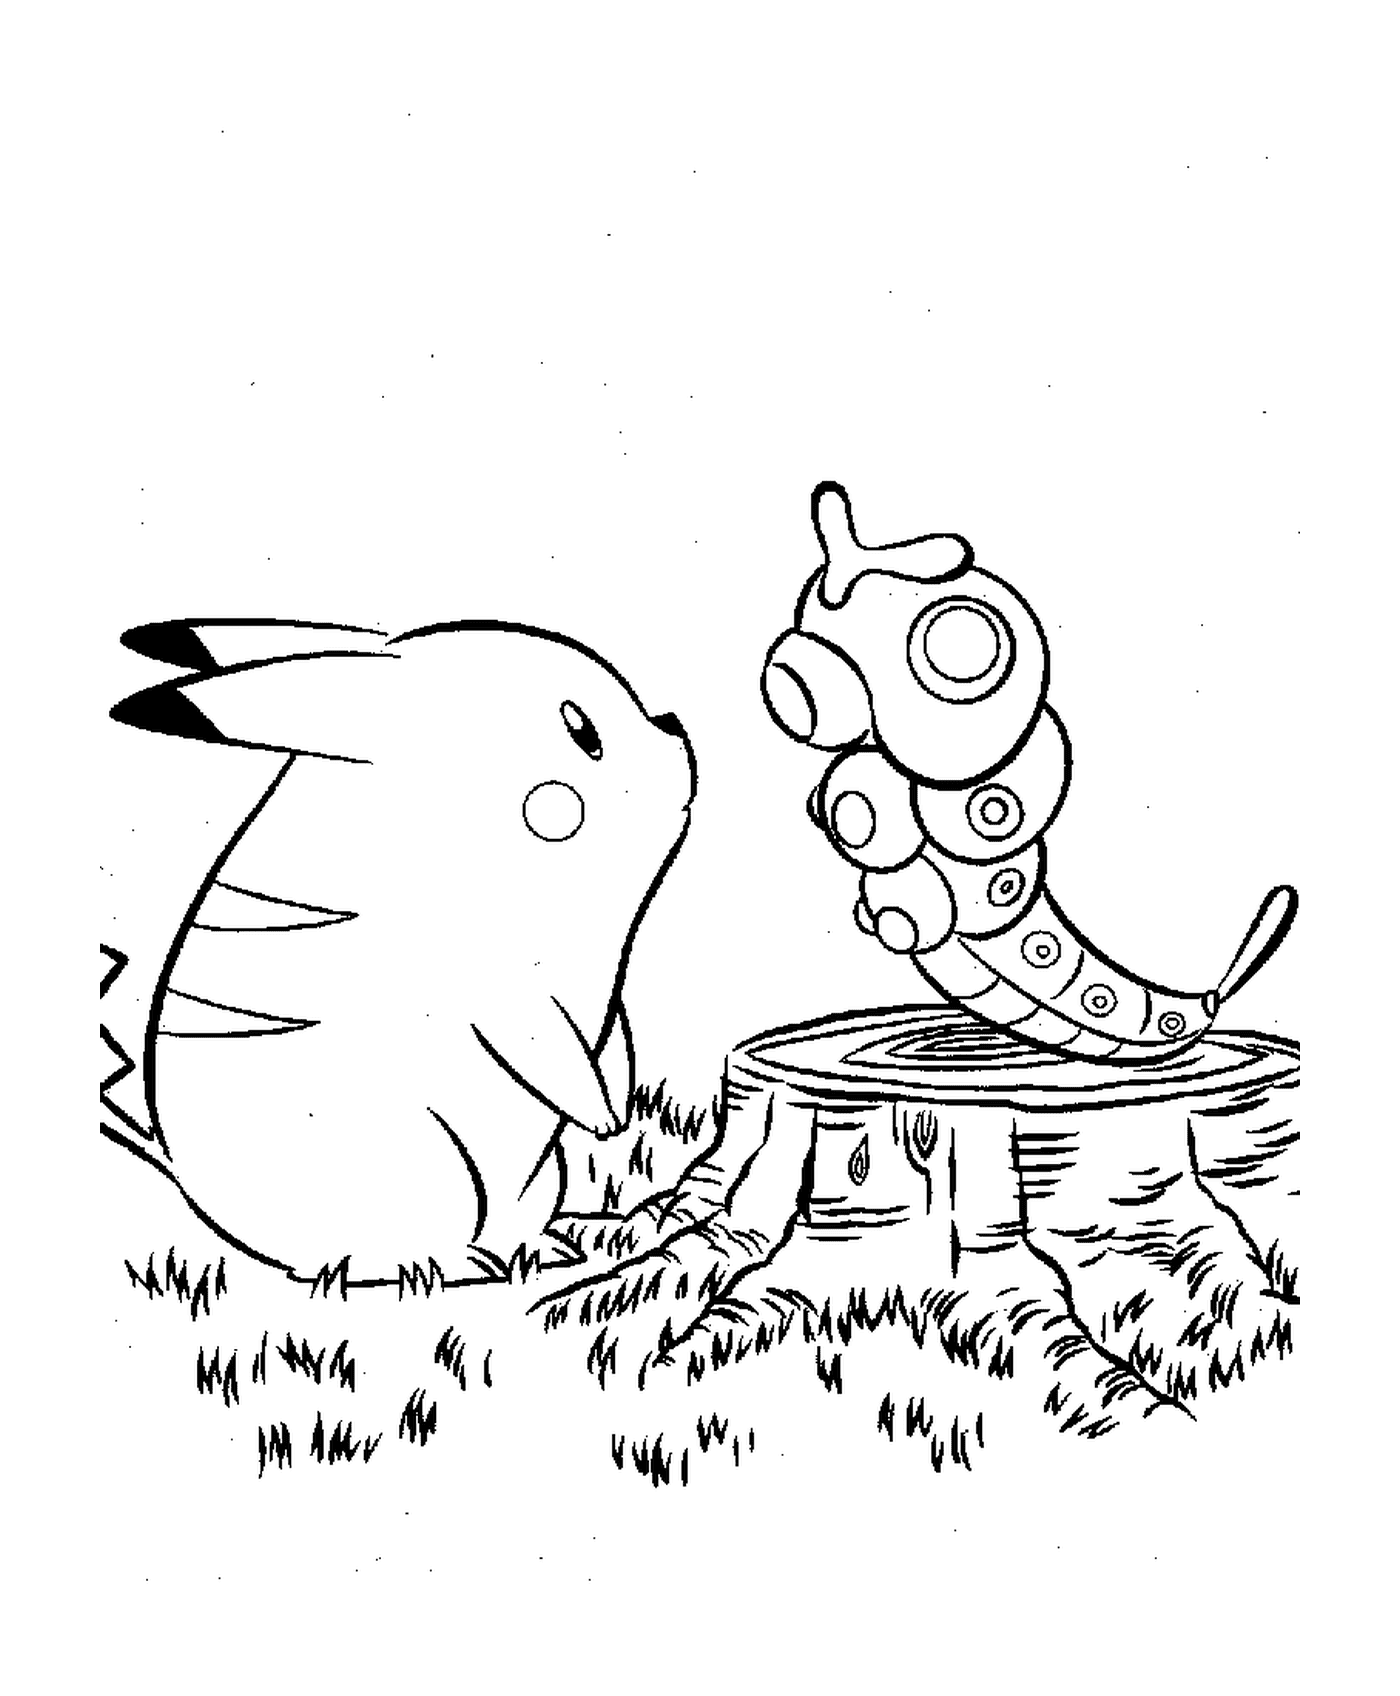  Pikachu acompañado de un insecto 